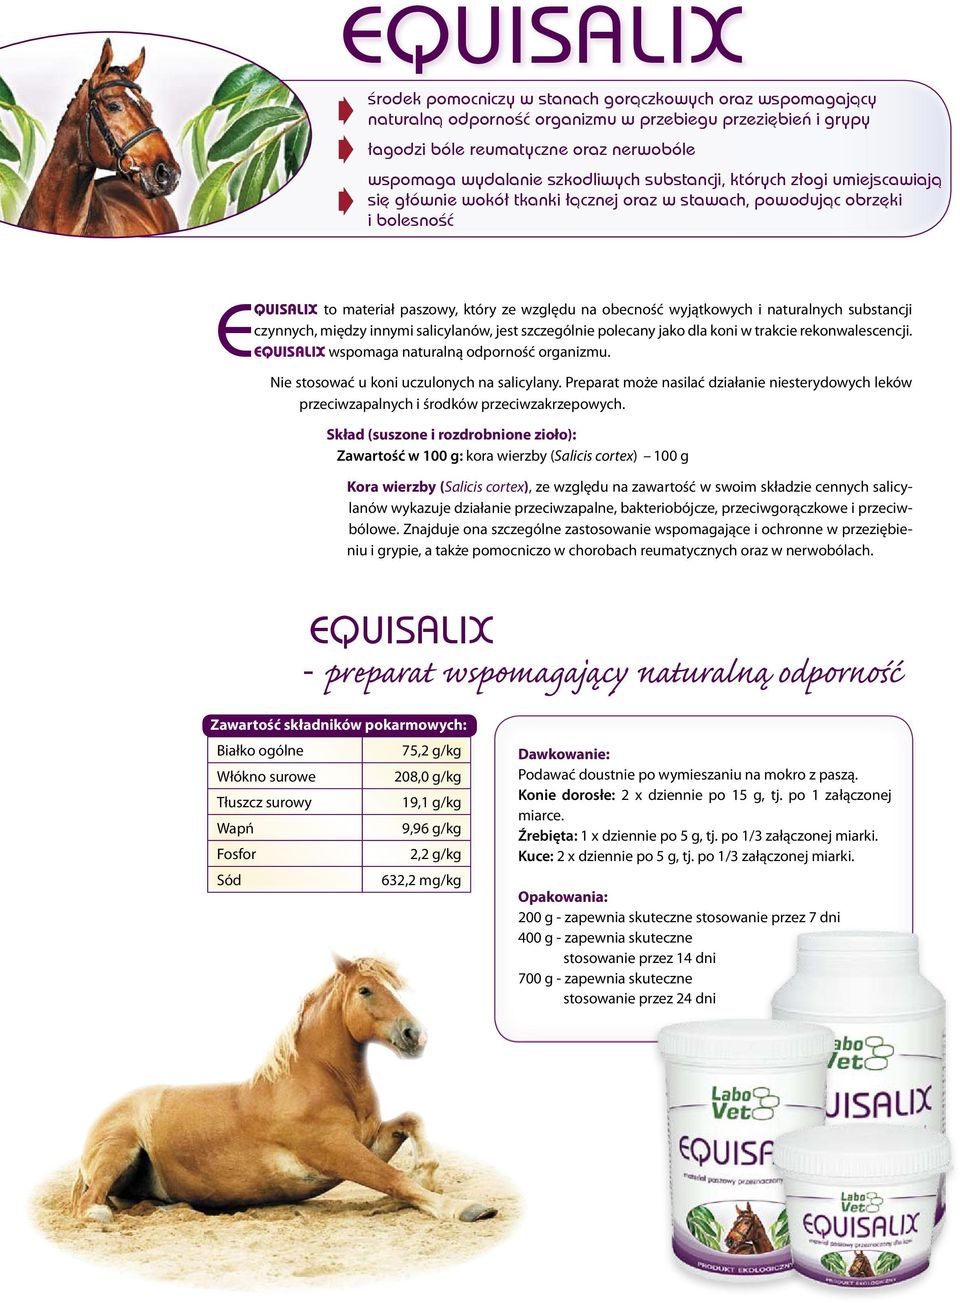 wyjątkowych i naturalnych substancji czynnych, między innymi salicylanów, jest szczególnie polecany jako dla koni w trakcie rekonwalescencji. EQUISALIX wspomaga naturalną odporność organizmu.